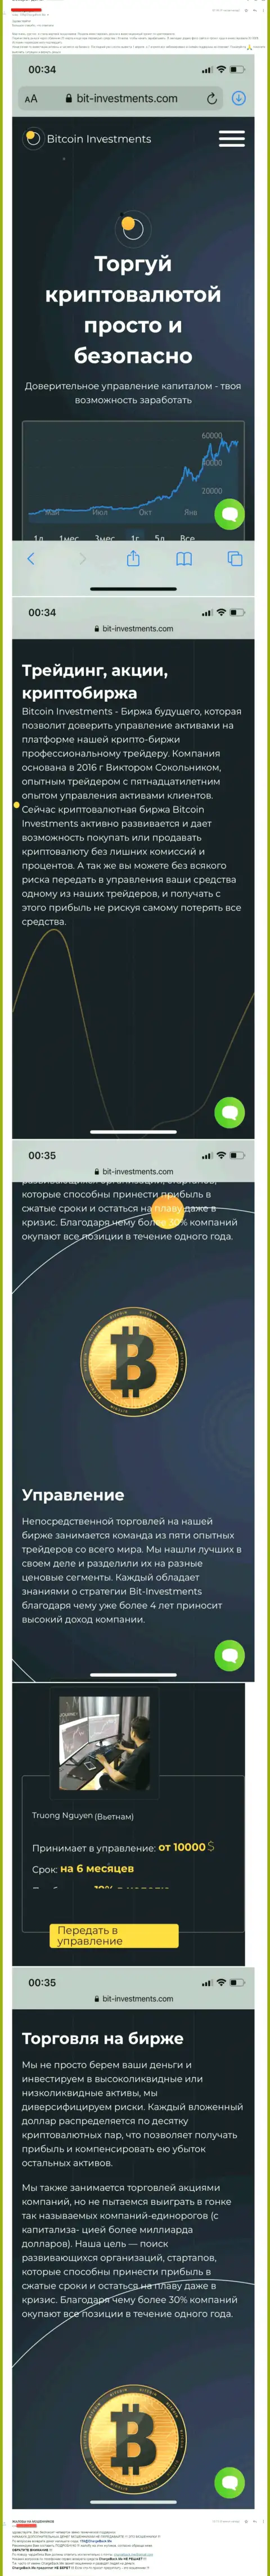 Бегите от конторы Bitcoin Limited подальше, присваивают вложенные денежные средства !!! (отзыв)